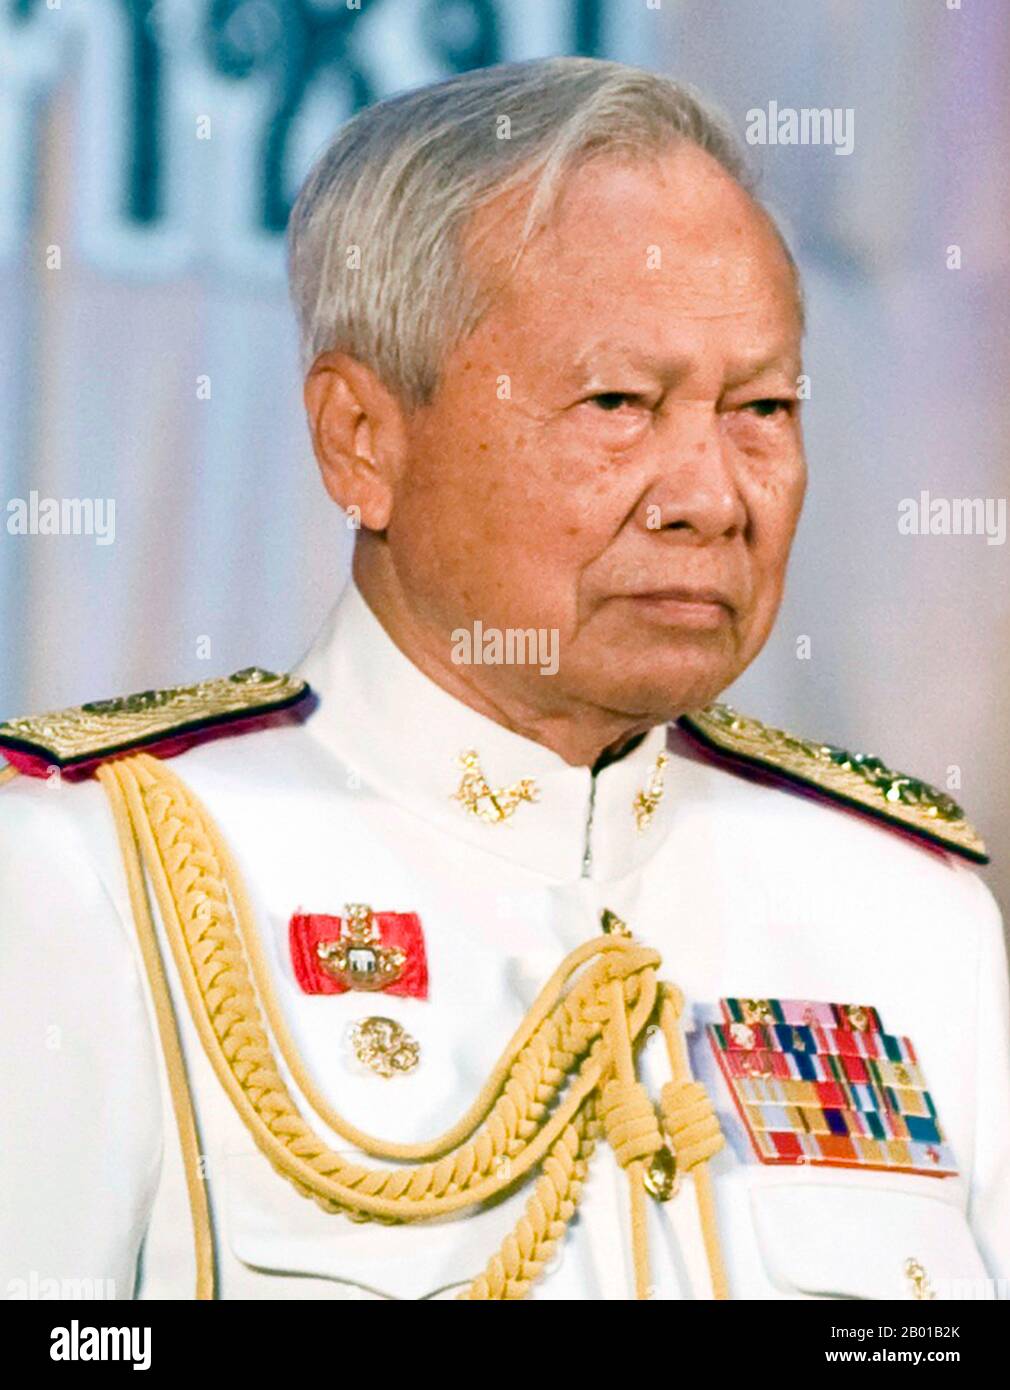 Thailandia: Generale Prem Tinsulanonda (26 agosto 1920 - 26 maggio 2019), primo Ministro della Thailandia (r. 1980-1988). Foto del Govt. Di Thailandia (CC BY licenza 2,0), c.. 2010. Il generale Prem Tinsulanonda era un ufficiale militare tailandese in pensione che serviva come primo Ministro della Thailandia dal 3 marzo 1980 al 4 agosto 1988. Ha servito come capo del Consiglio Privy del re di Thailandia, Bhumibol Adulyadej (Rama IX). Prem, in qualità di capo del Consiglio Privy, era un leader nella promozione delle ideologie e dei progetti reali del re Bhumibol, anche se a volte si rappresentava come la voce del re. Foto Stock